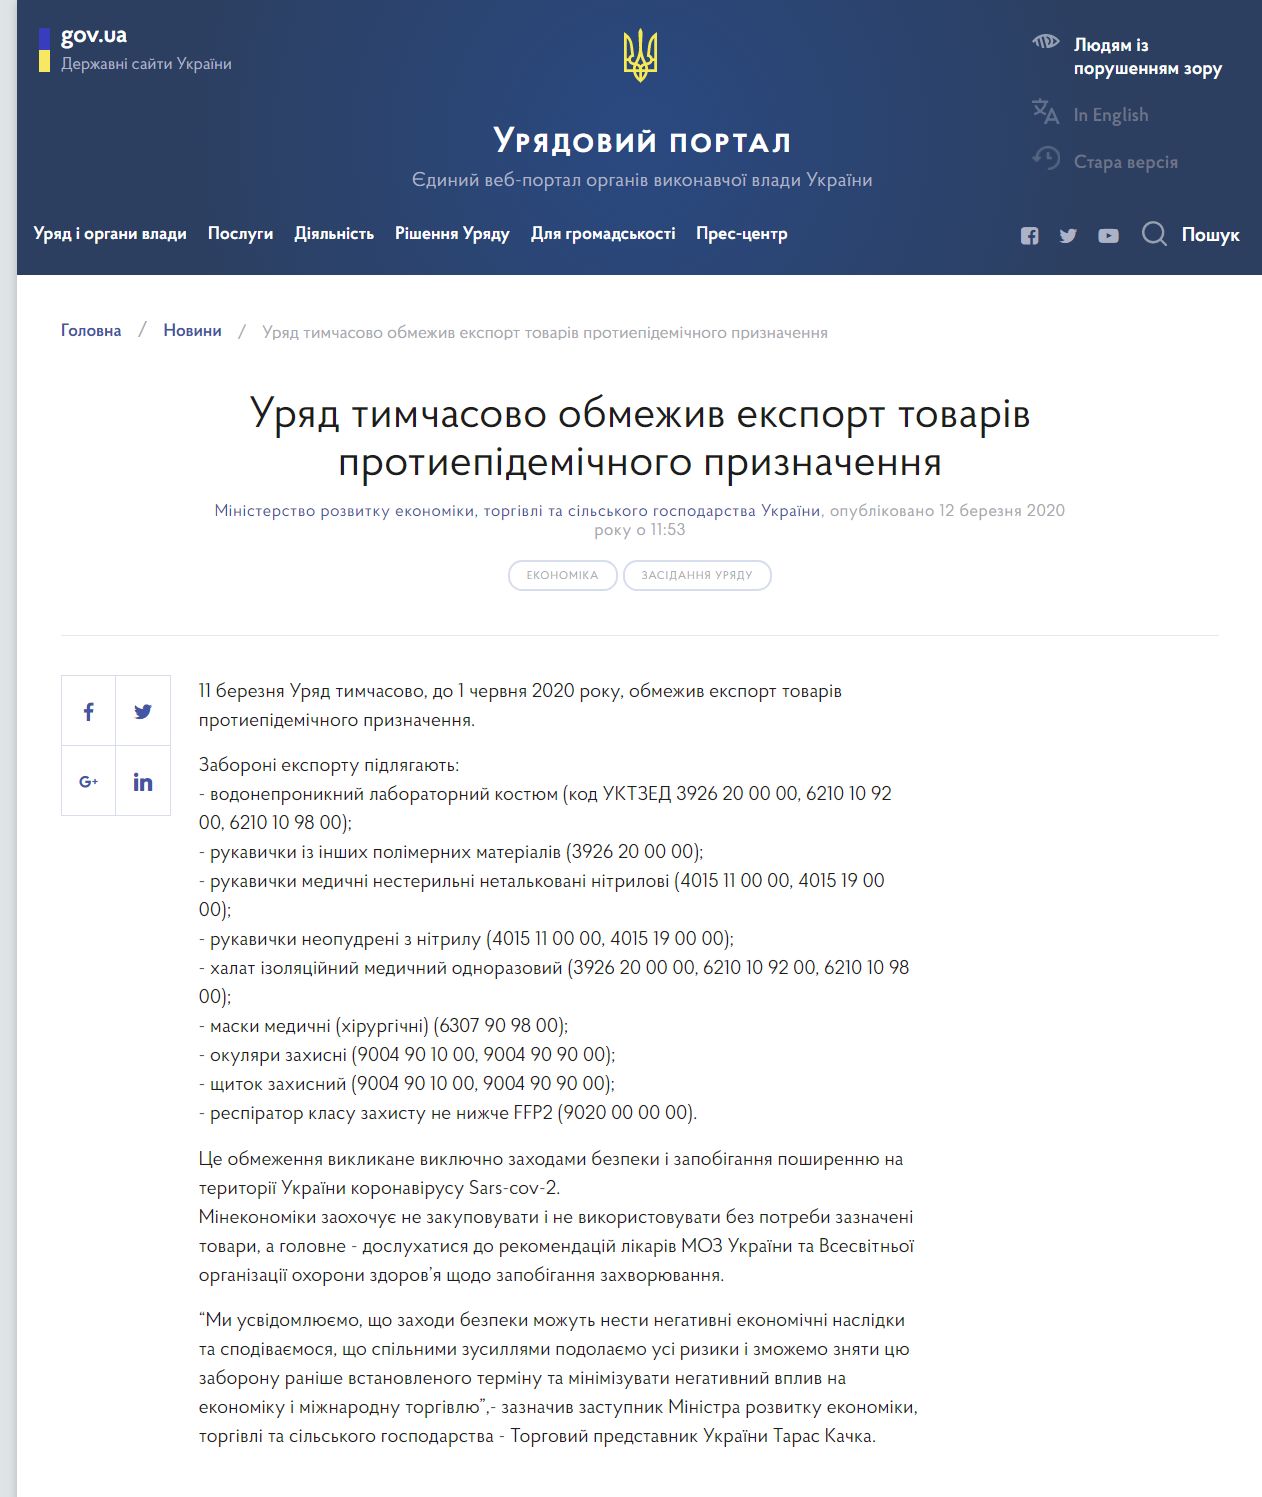 https://www.kmu.gov.ua/news/uryad-timchasovo-obmezhiv-eksport-tovariv-protiepidemichnogo-priznachennya